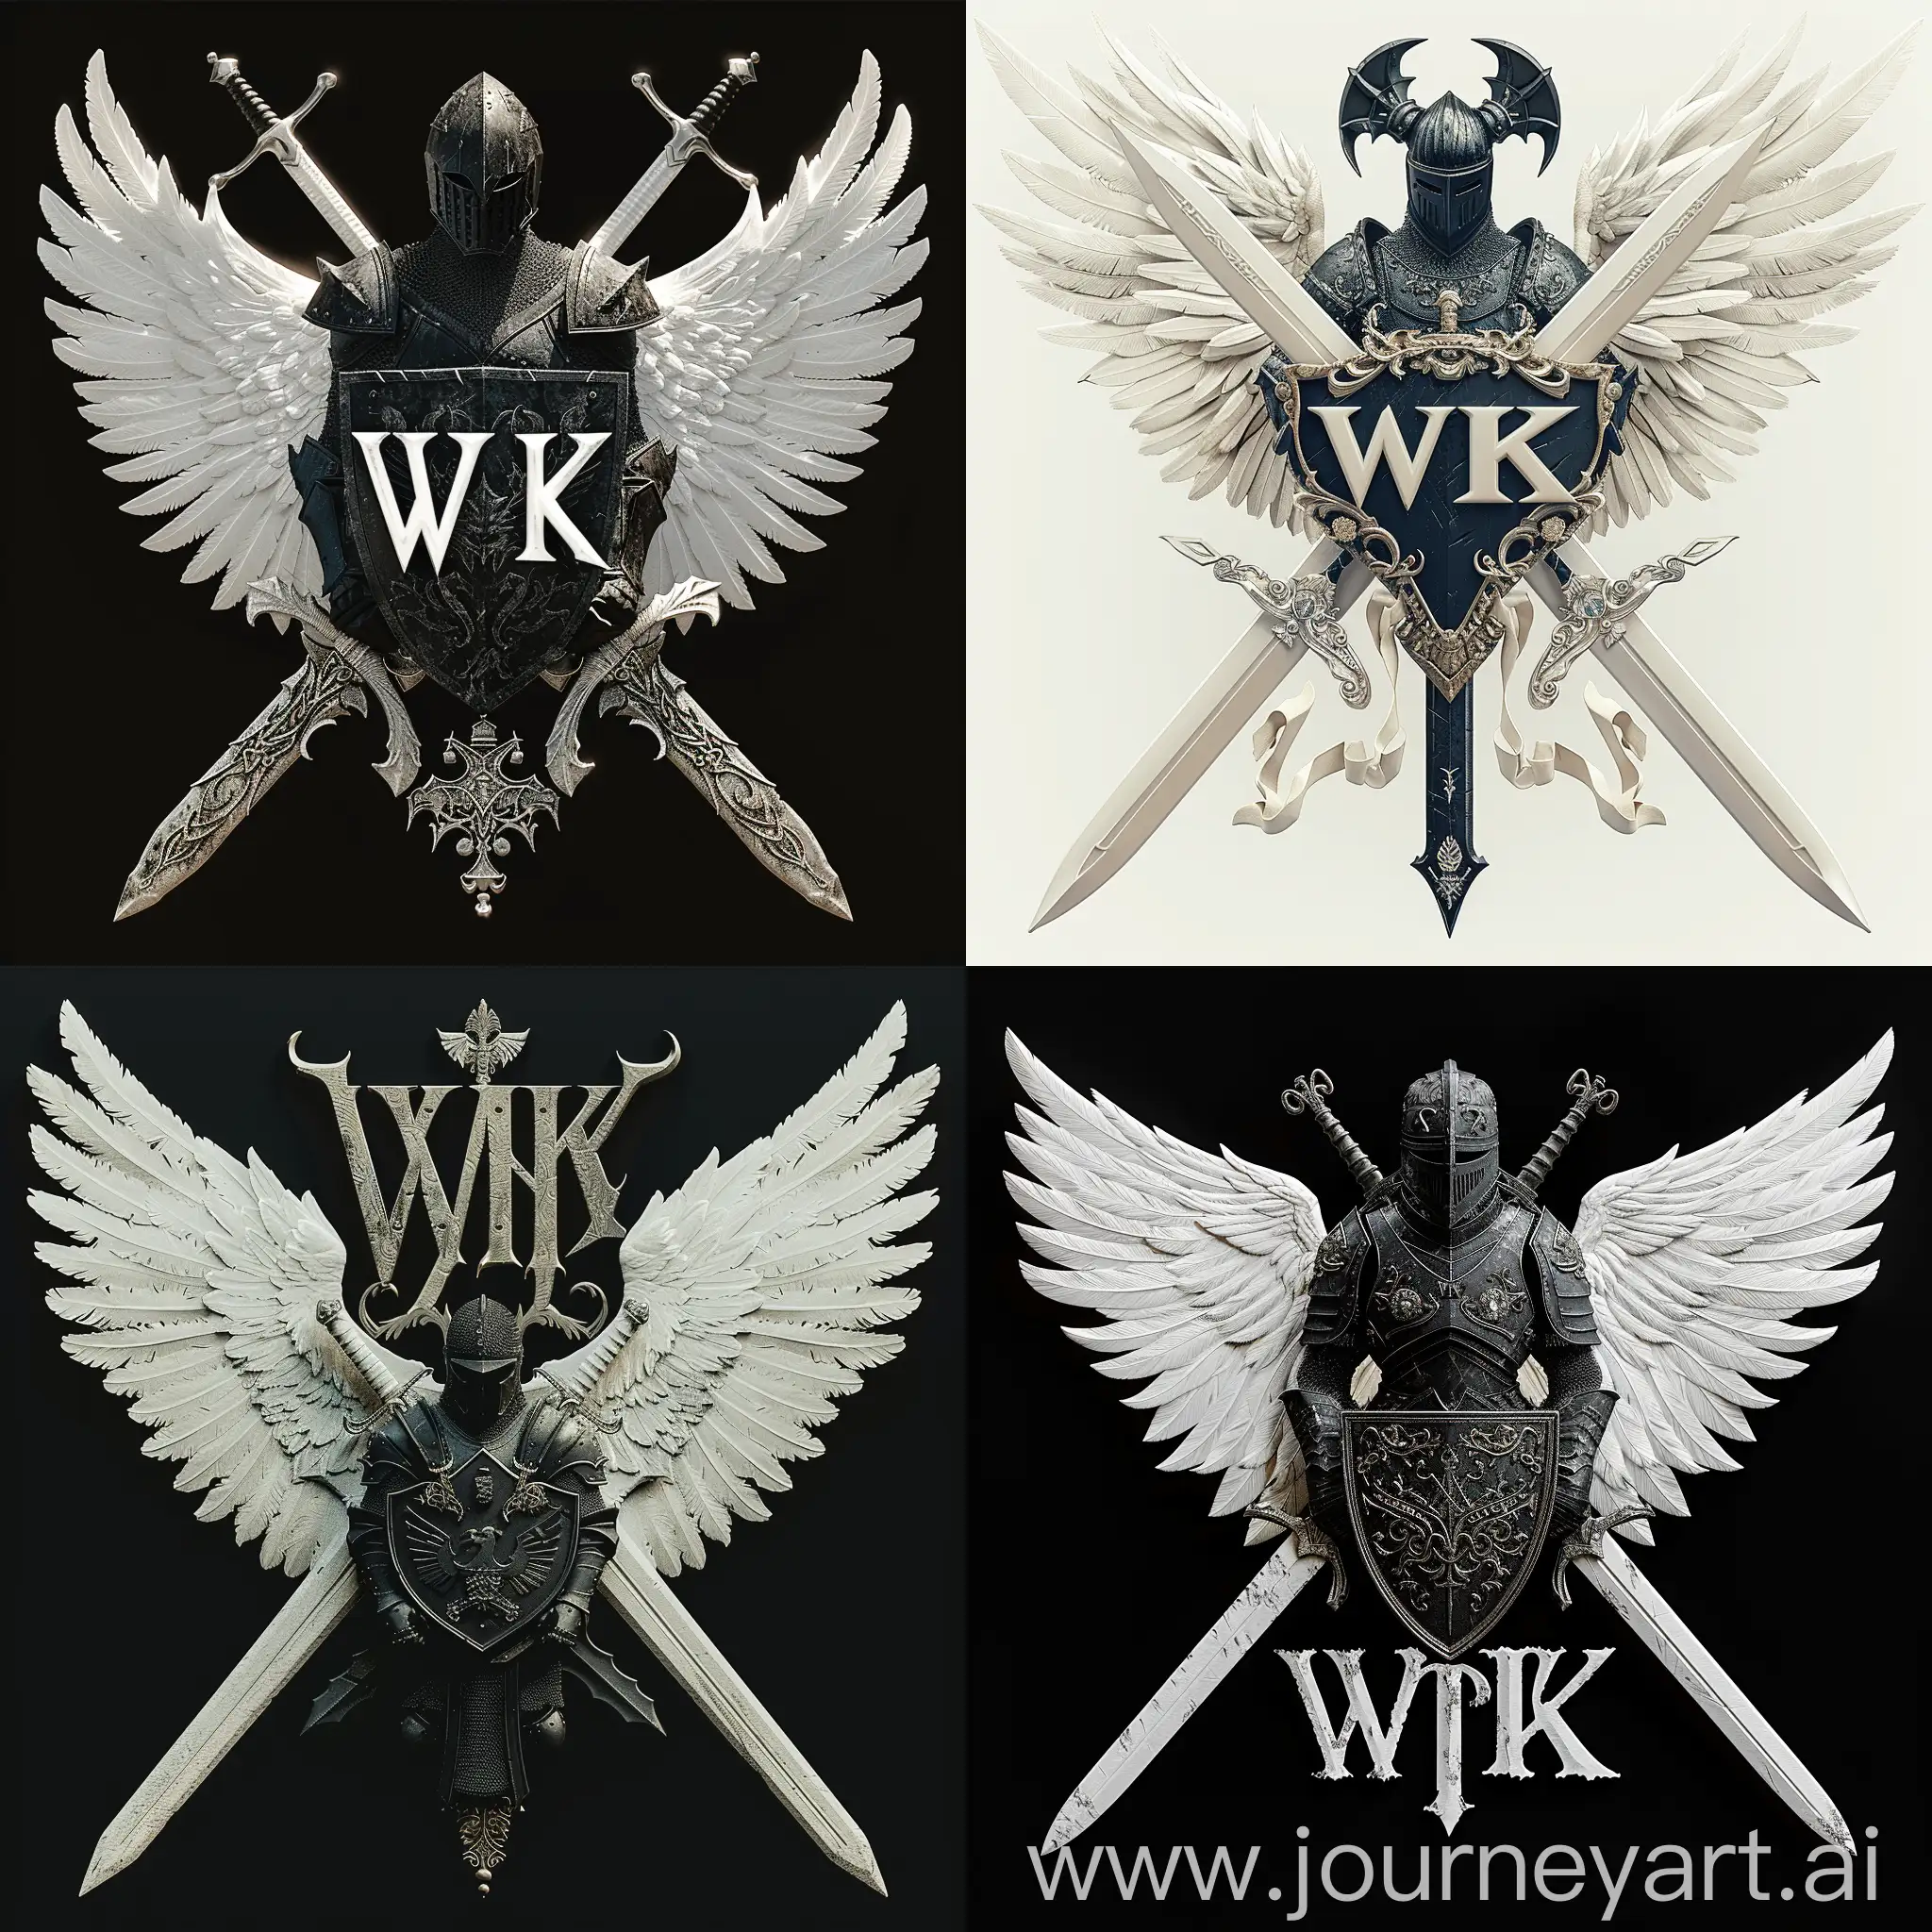 логотип "WK", где буквы "WK" стилизованы в форме двух переплетающихся мечей с орнаментами на лезвиях, белые мечи, белые крылья, между мечами изображен черный рыцарь в боевой позе держащий в руках щит и меч, рыцарь представлен в доспехах с символикой, отражающей его мощь и благородство, цветовая гамма белый мечи, черный рыцаря, готический шрифт "WK" в форме мечей, --quality 3 --s 350